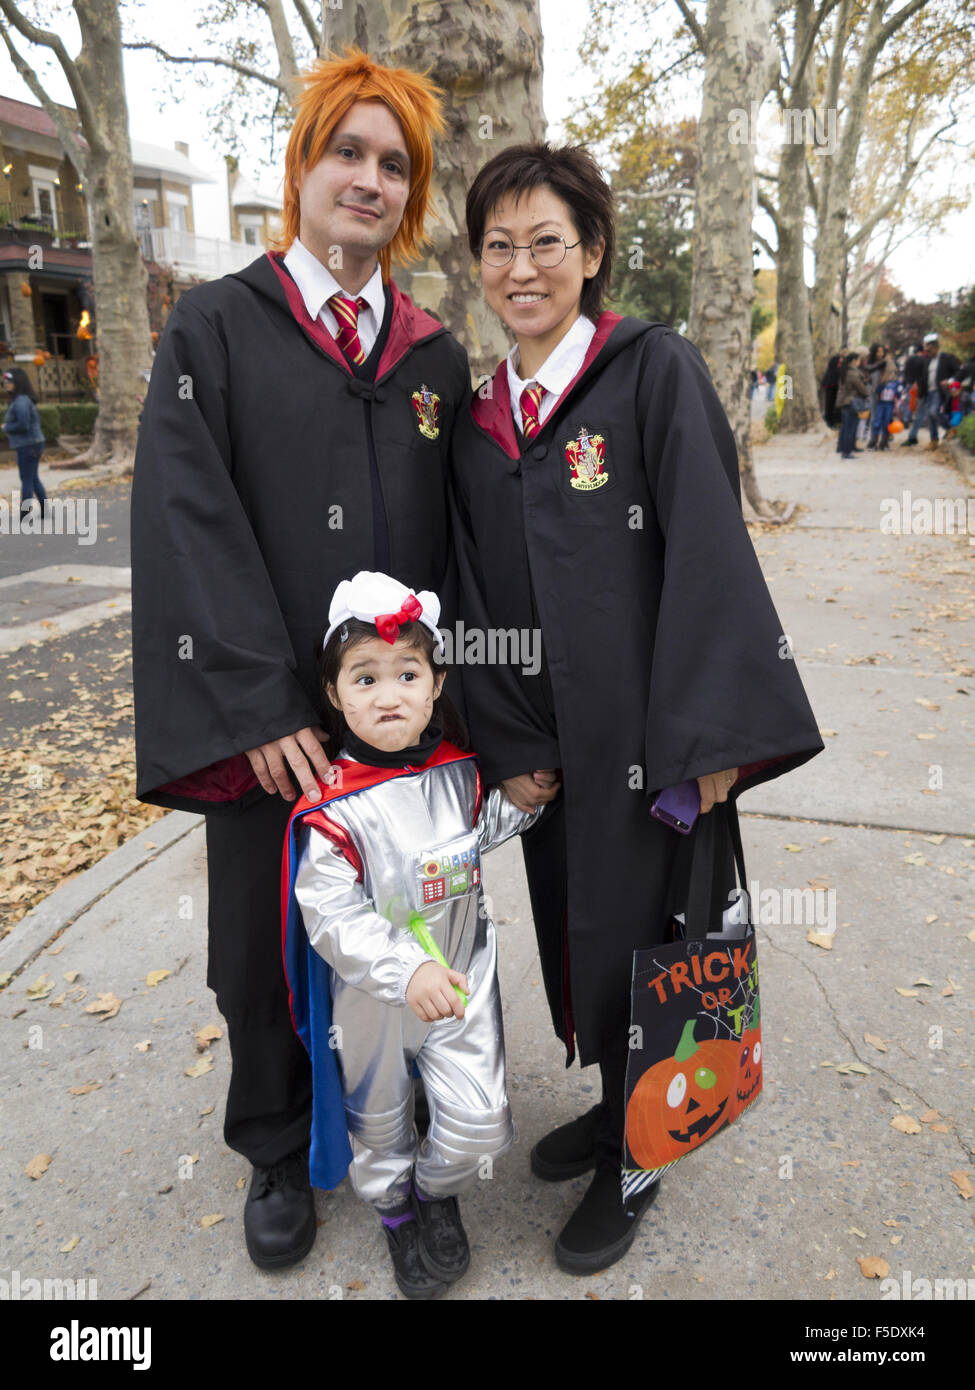 Famiglia trucco-o-trattare n la sezione di Kensington di Brooklyn, New York, 2015. I genitori vestiti come personaggi di Harry Potter. Foto Stock